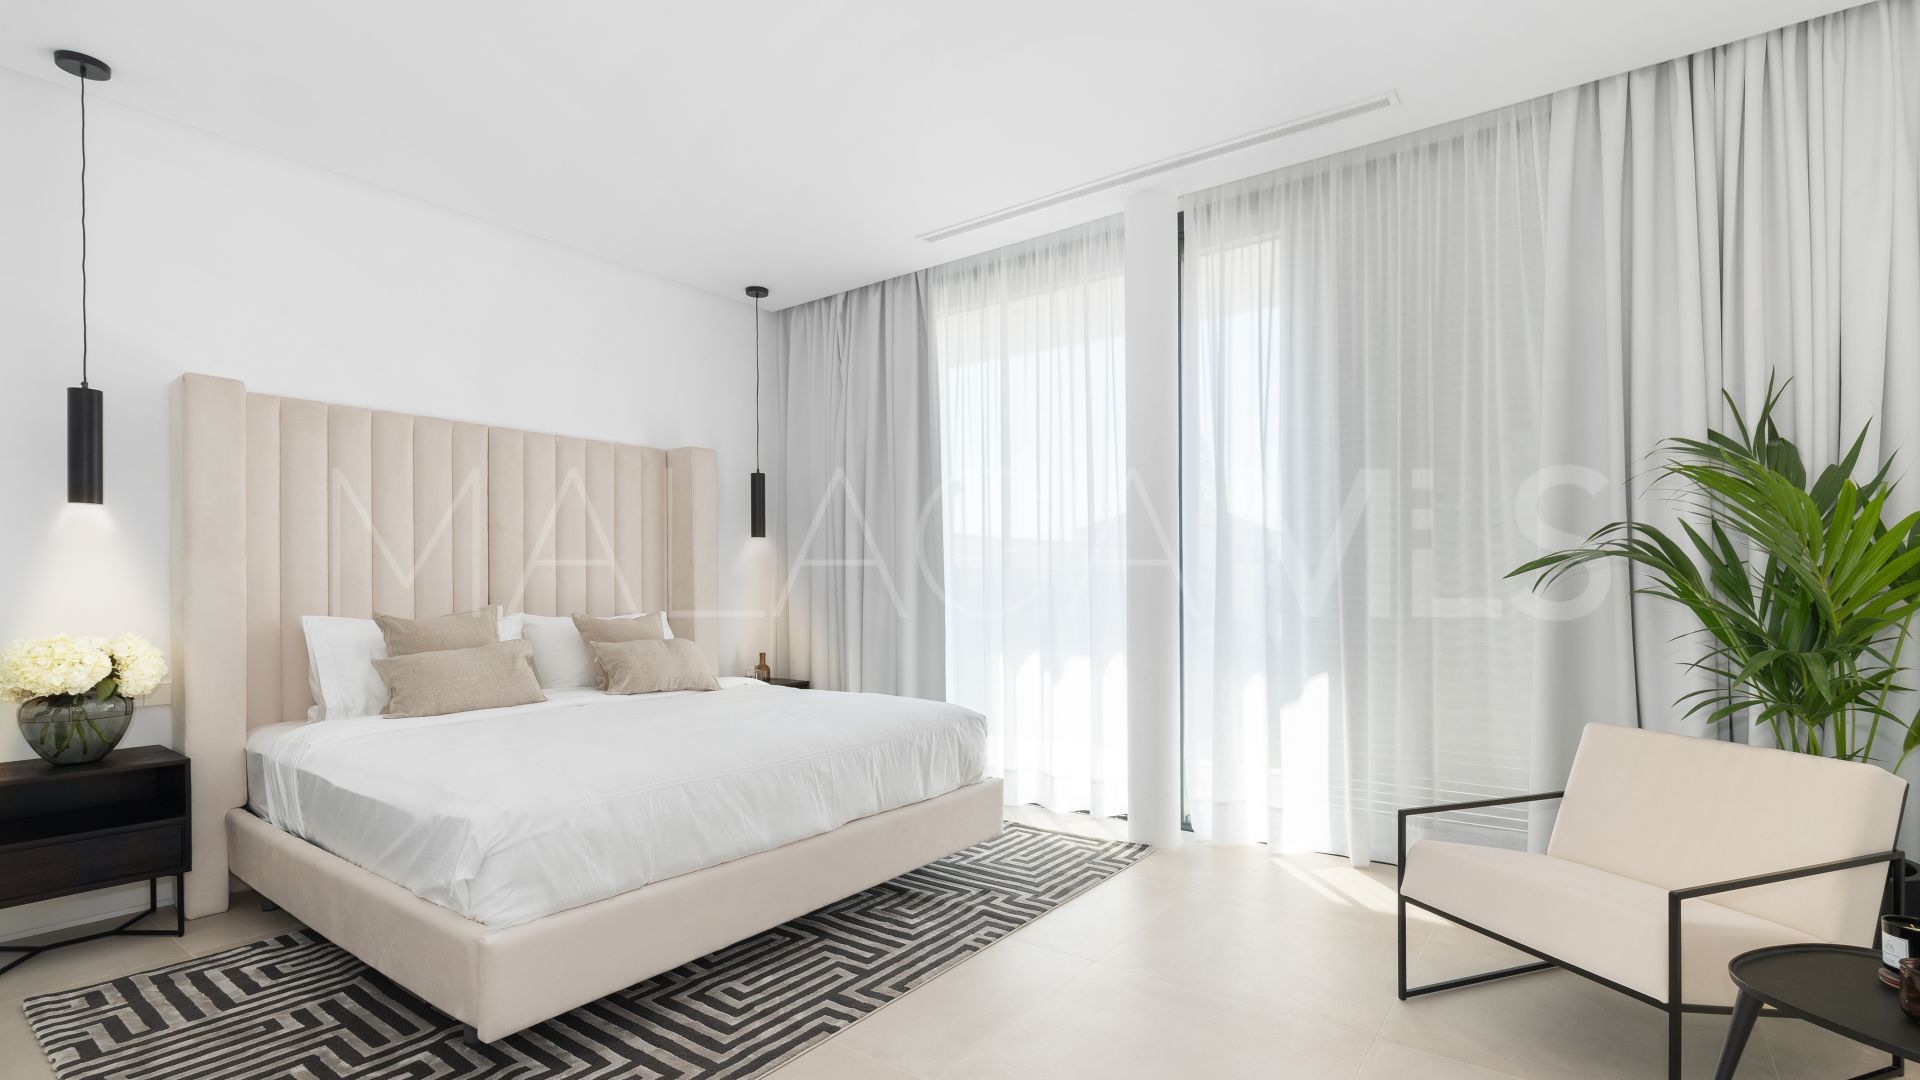 6 bedrooms villa for sale in Cortijo Blanco